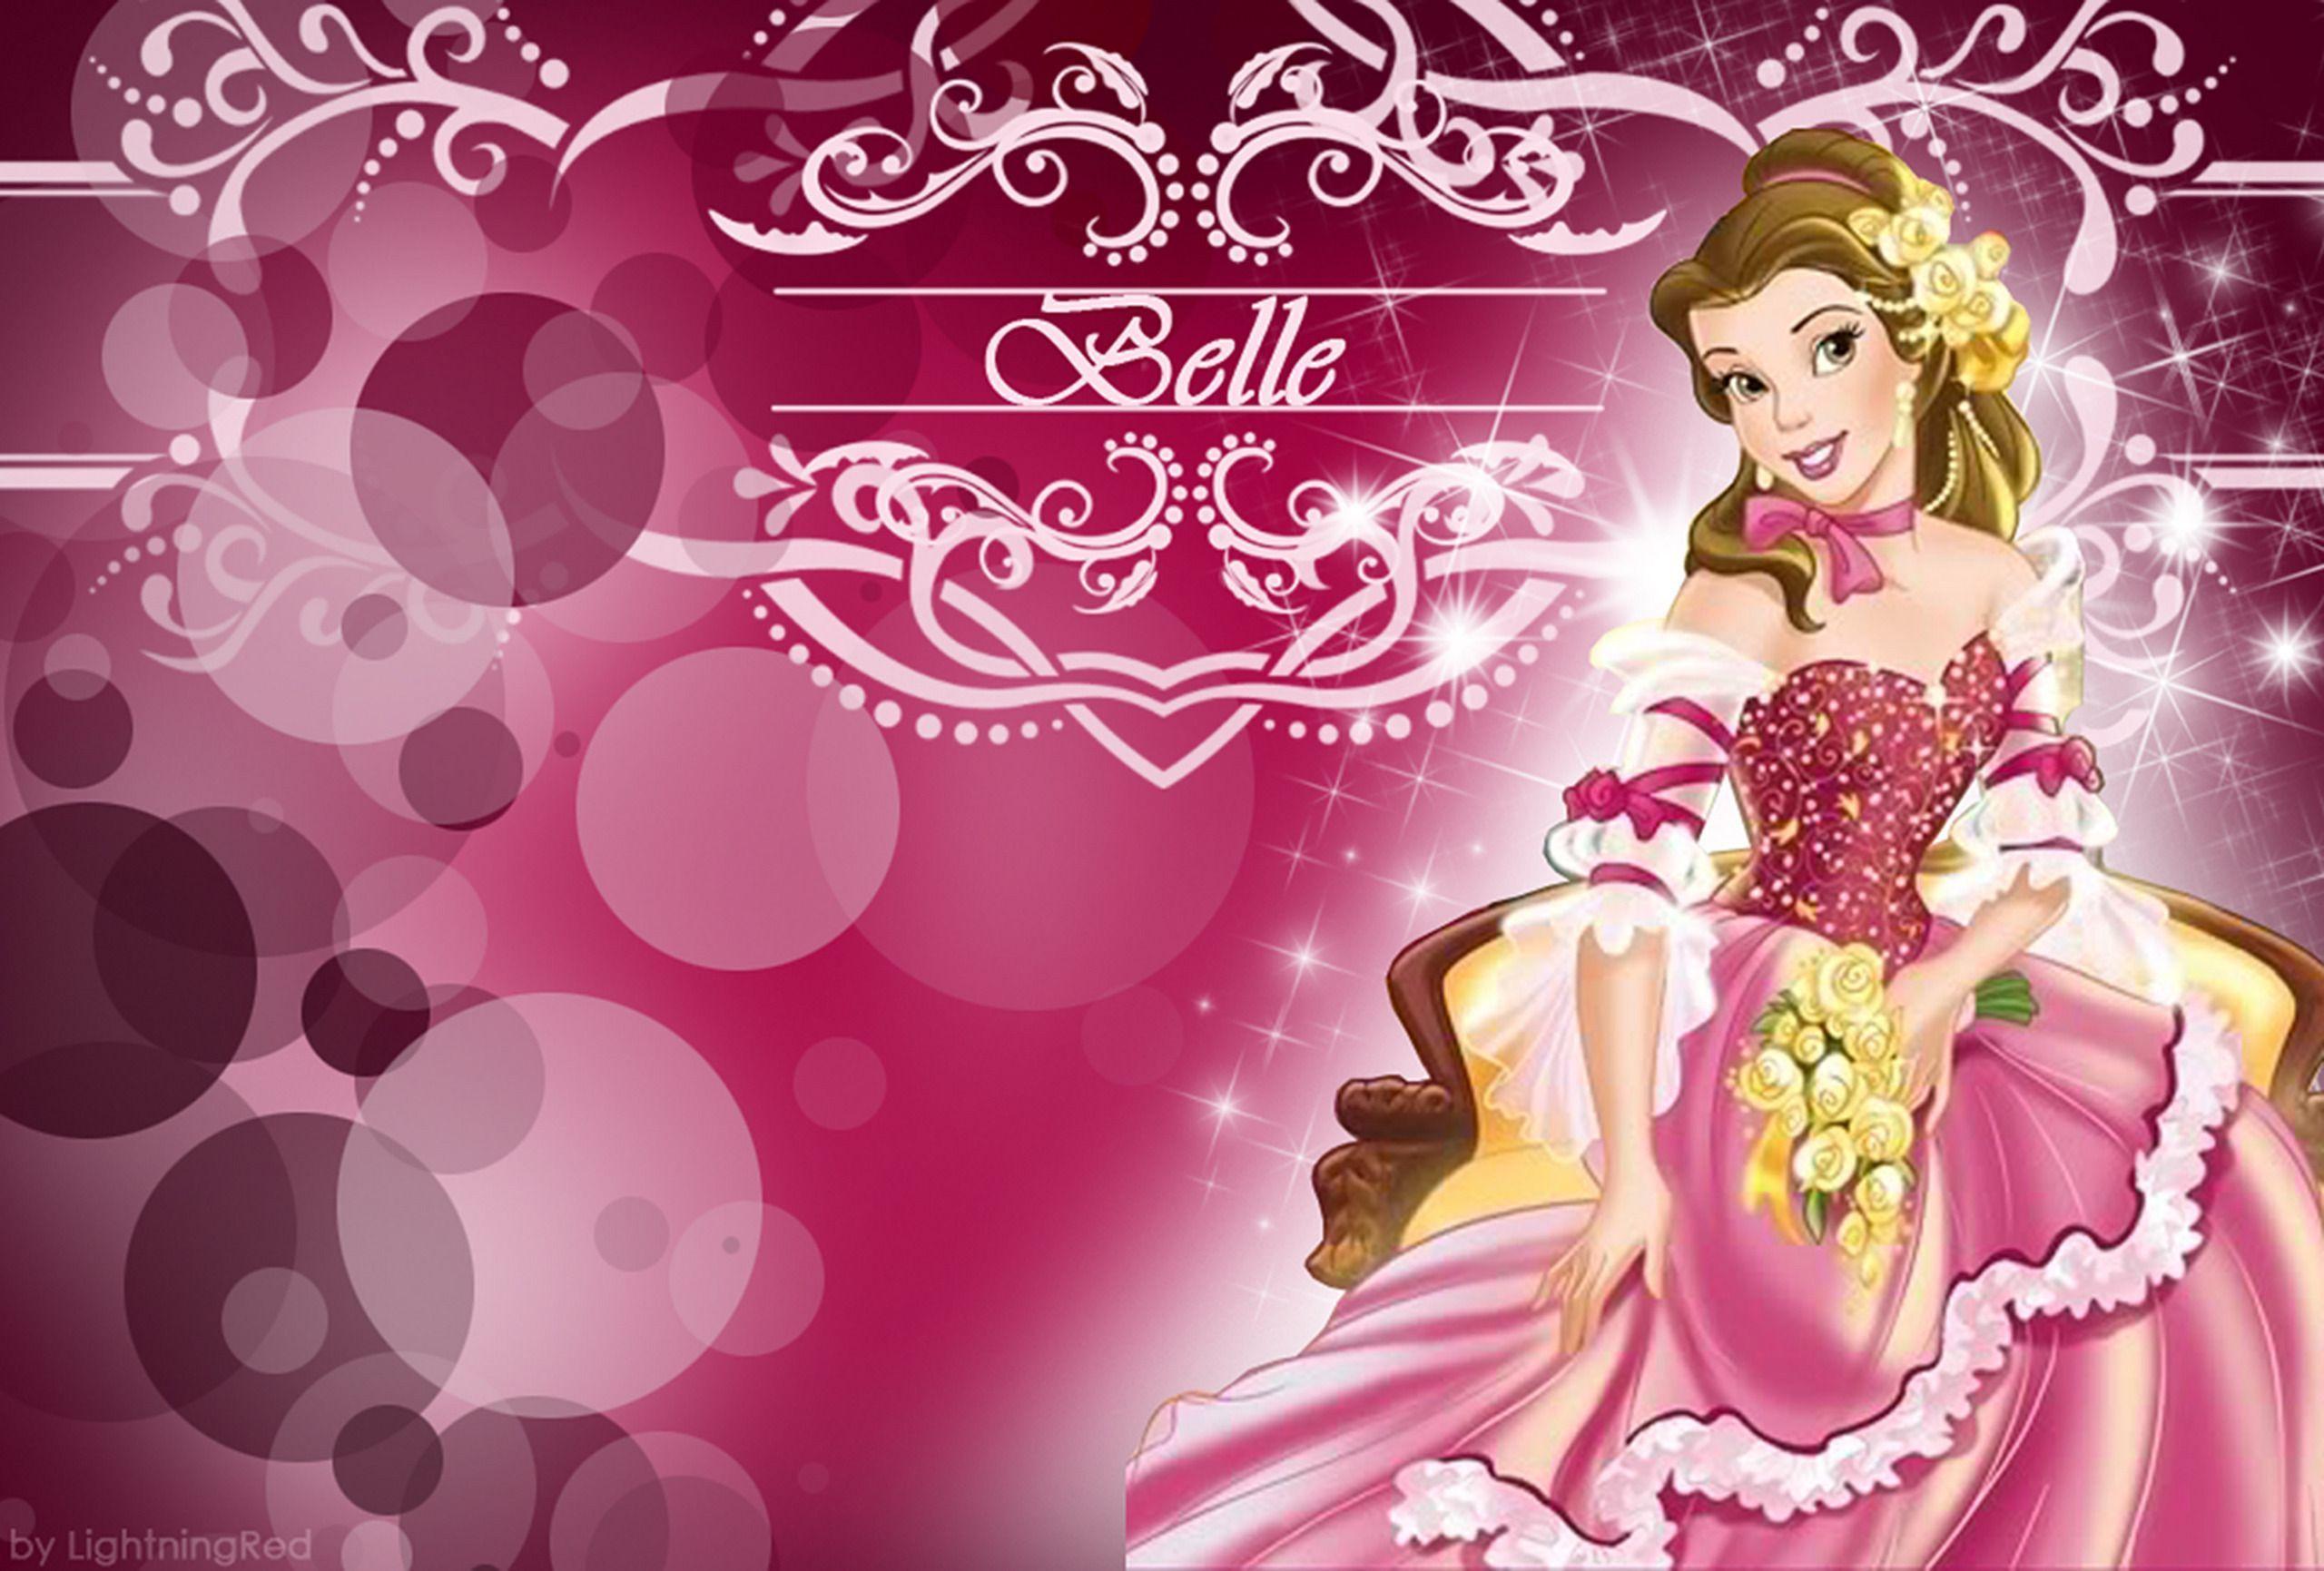 Disney Princess Belle Wallpaper. Foolhardi